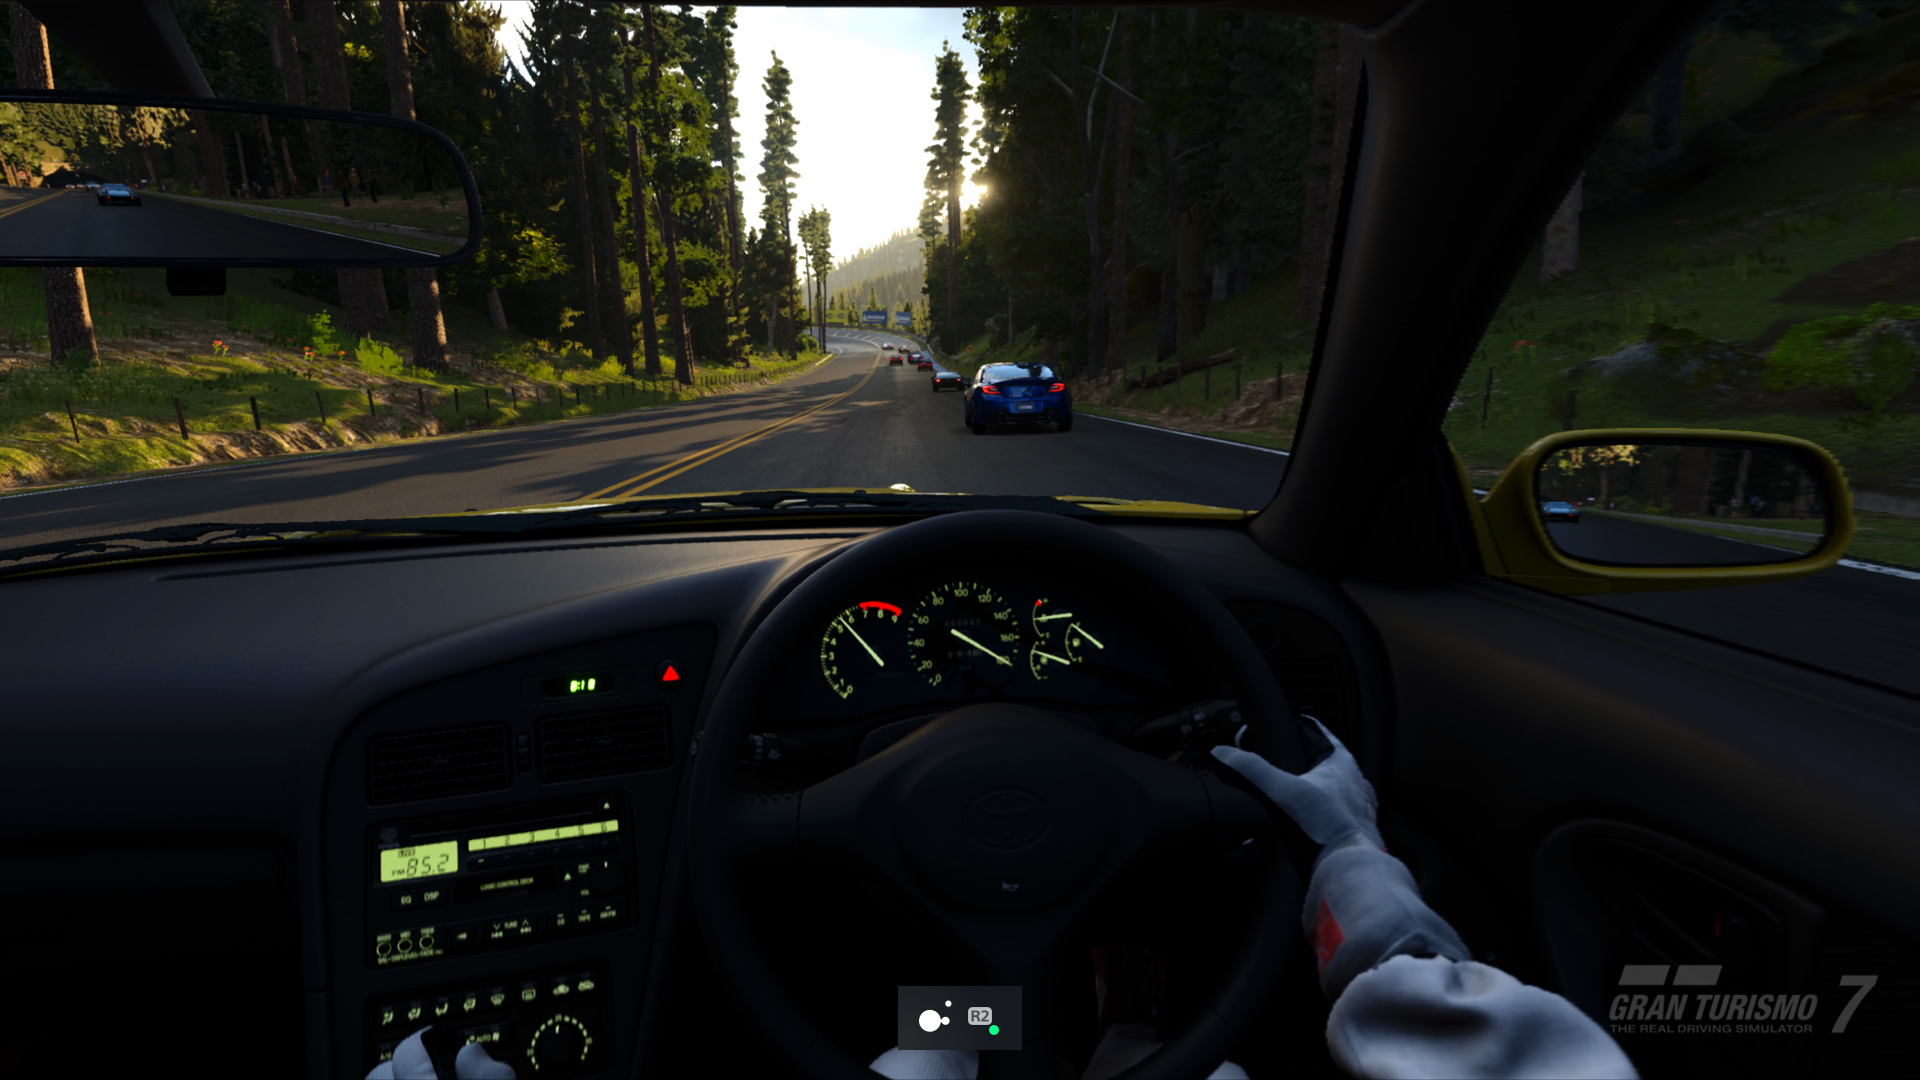  "PS5-Screenshot von Gran Turismo 7 mit aktiviertem Toggle-Modus für die "R2"-Taste auf dem Access Controller"